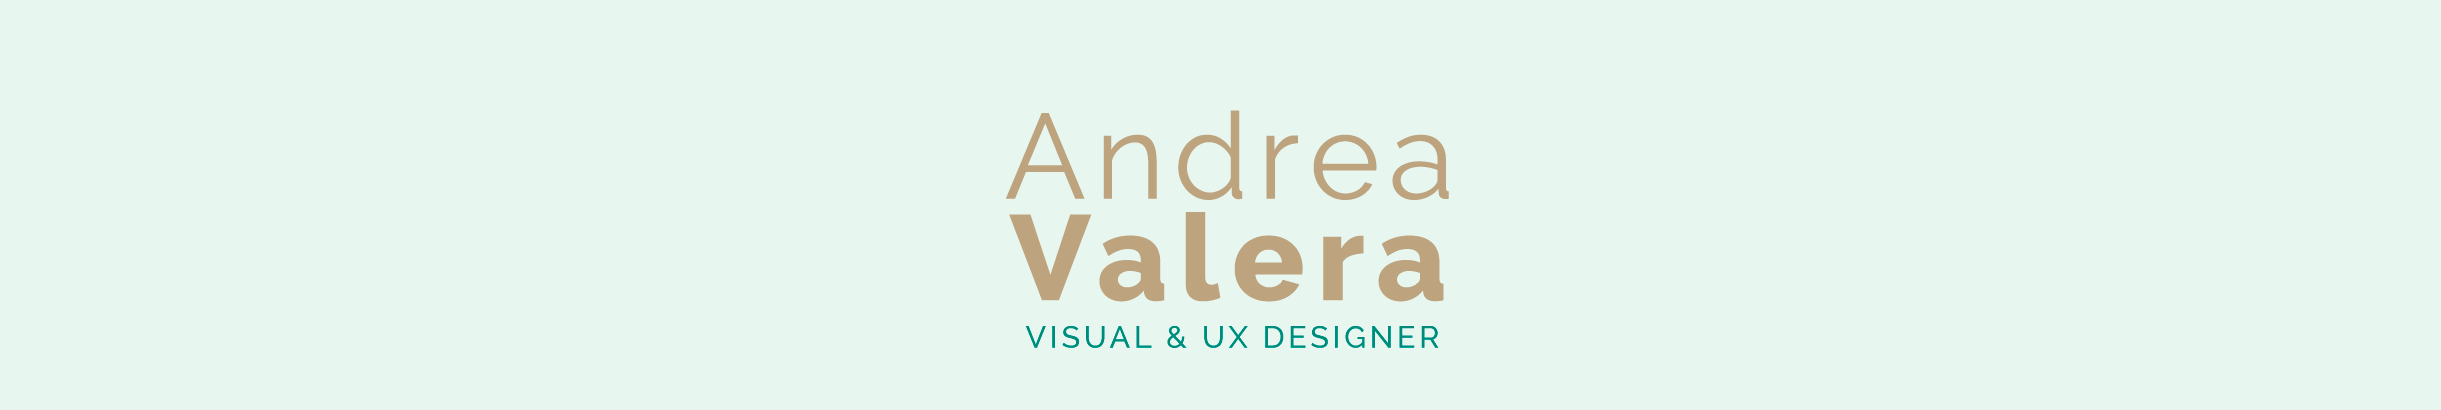 Andrea Valera's profile banner